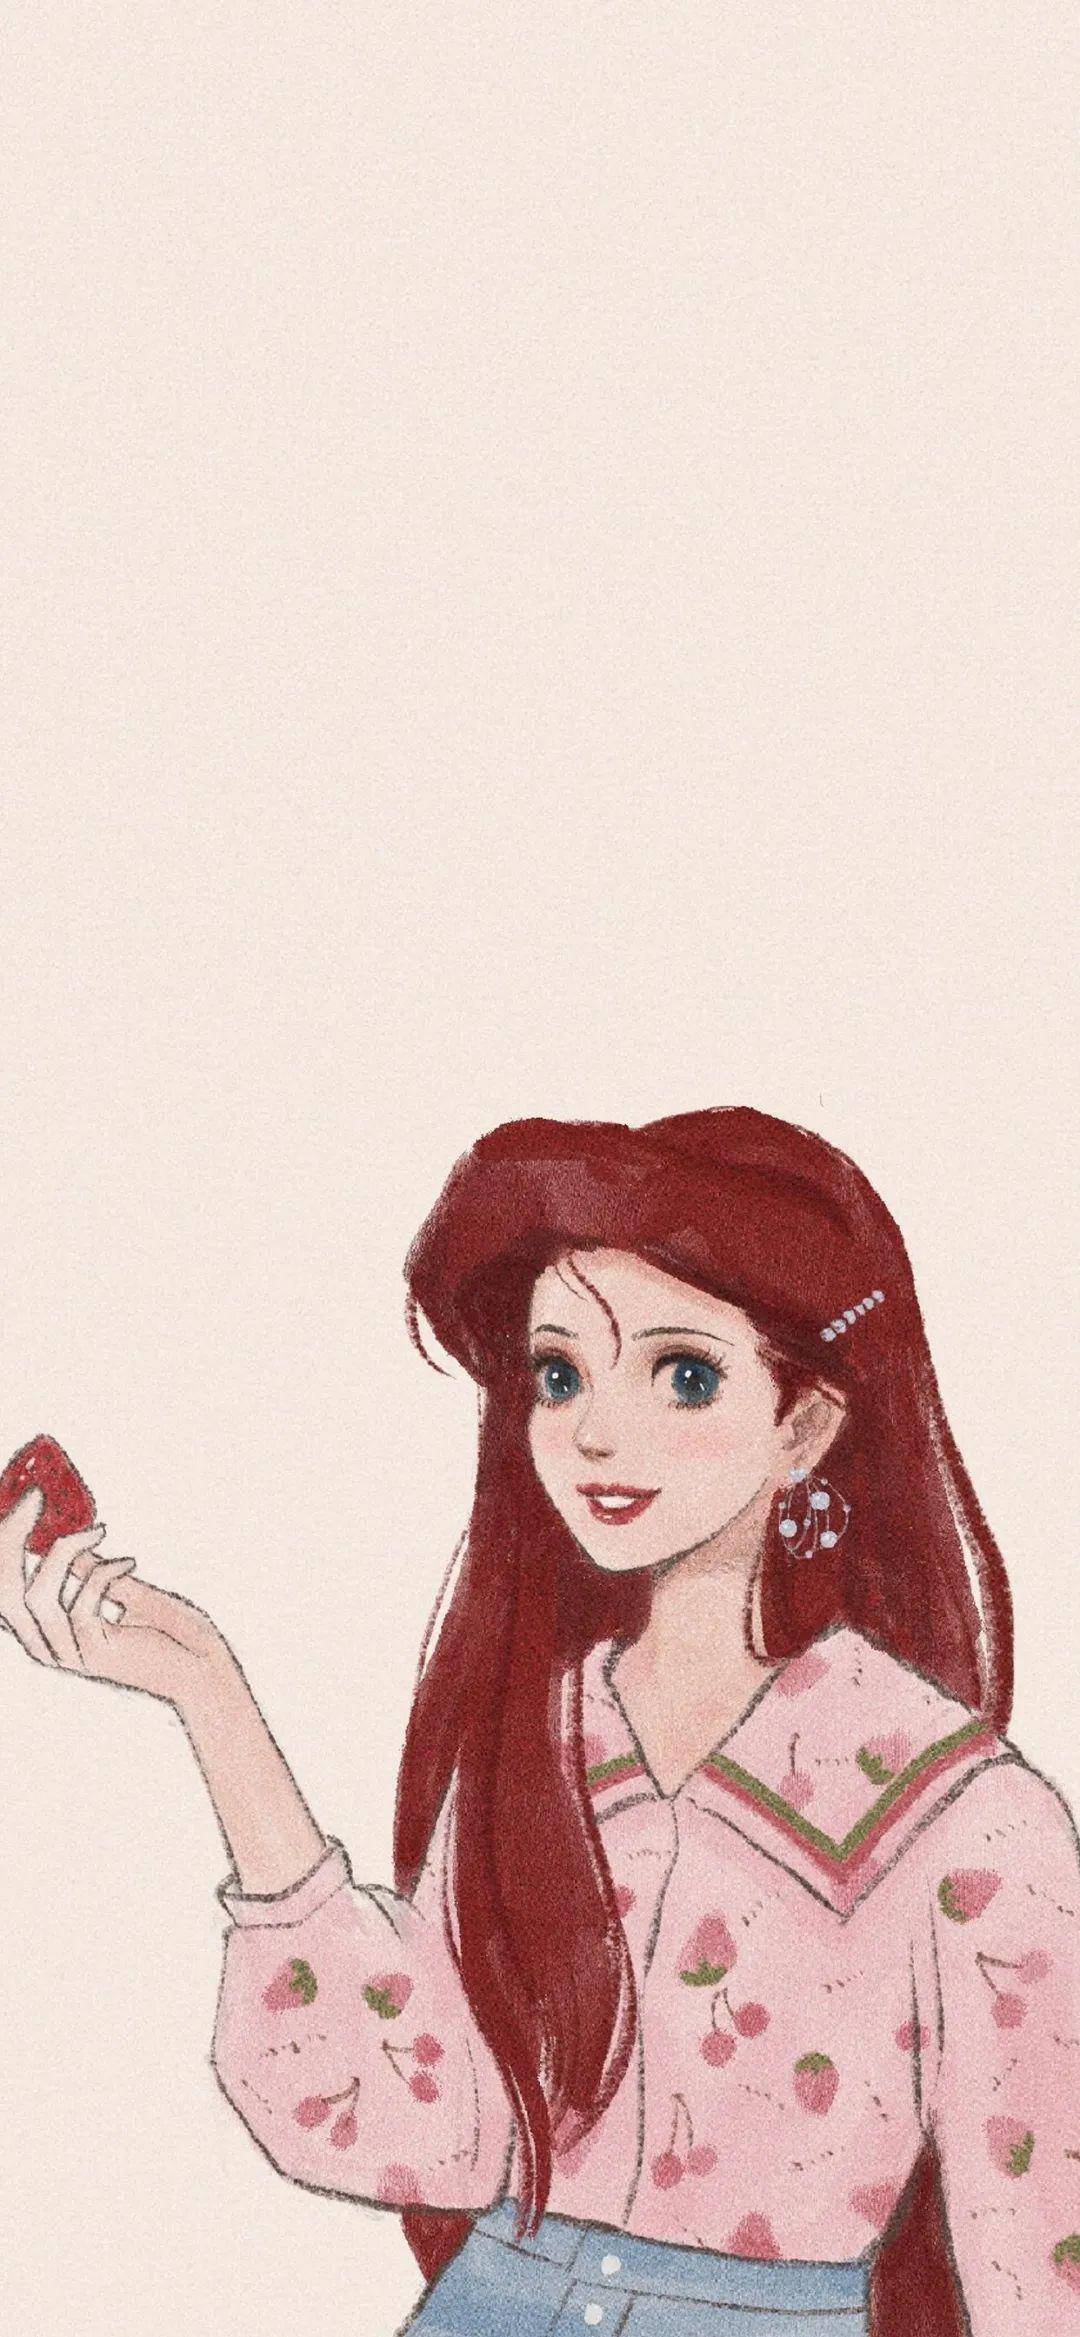 迪士尼公主微信背景图图片